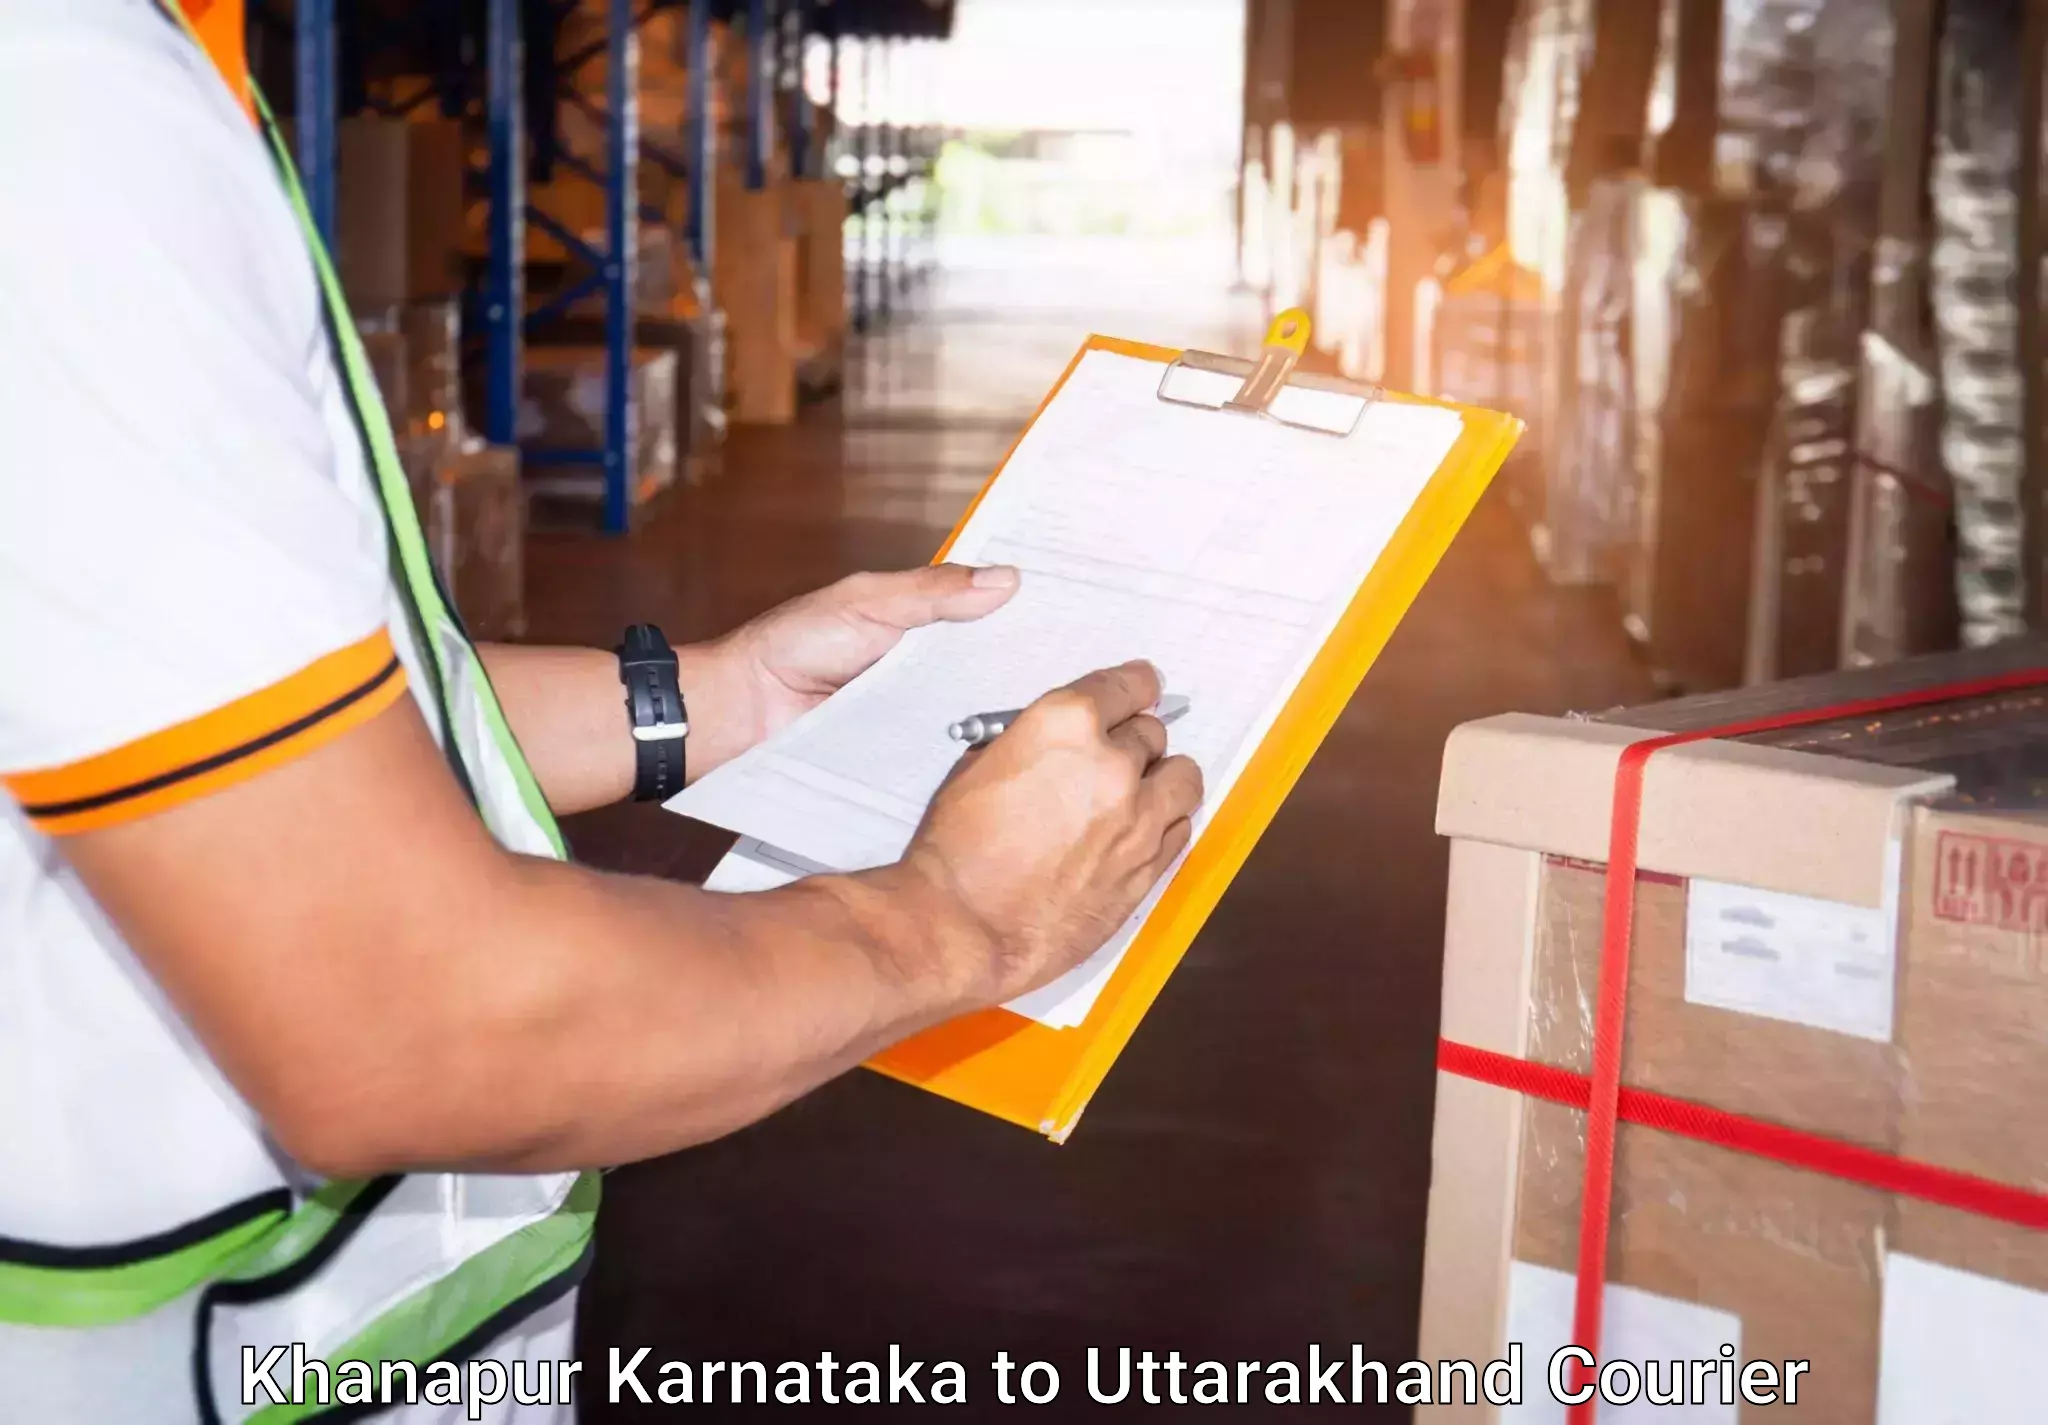 Baggage delivery technology Khanapur Karnataka to Rudraprayag